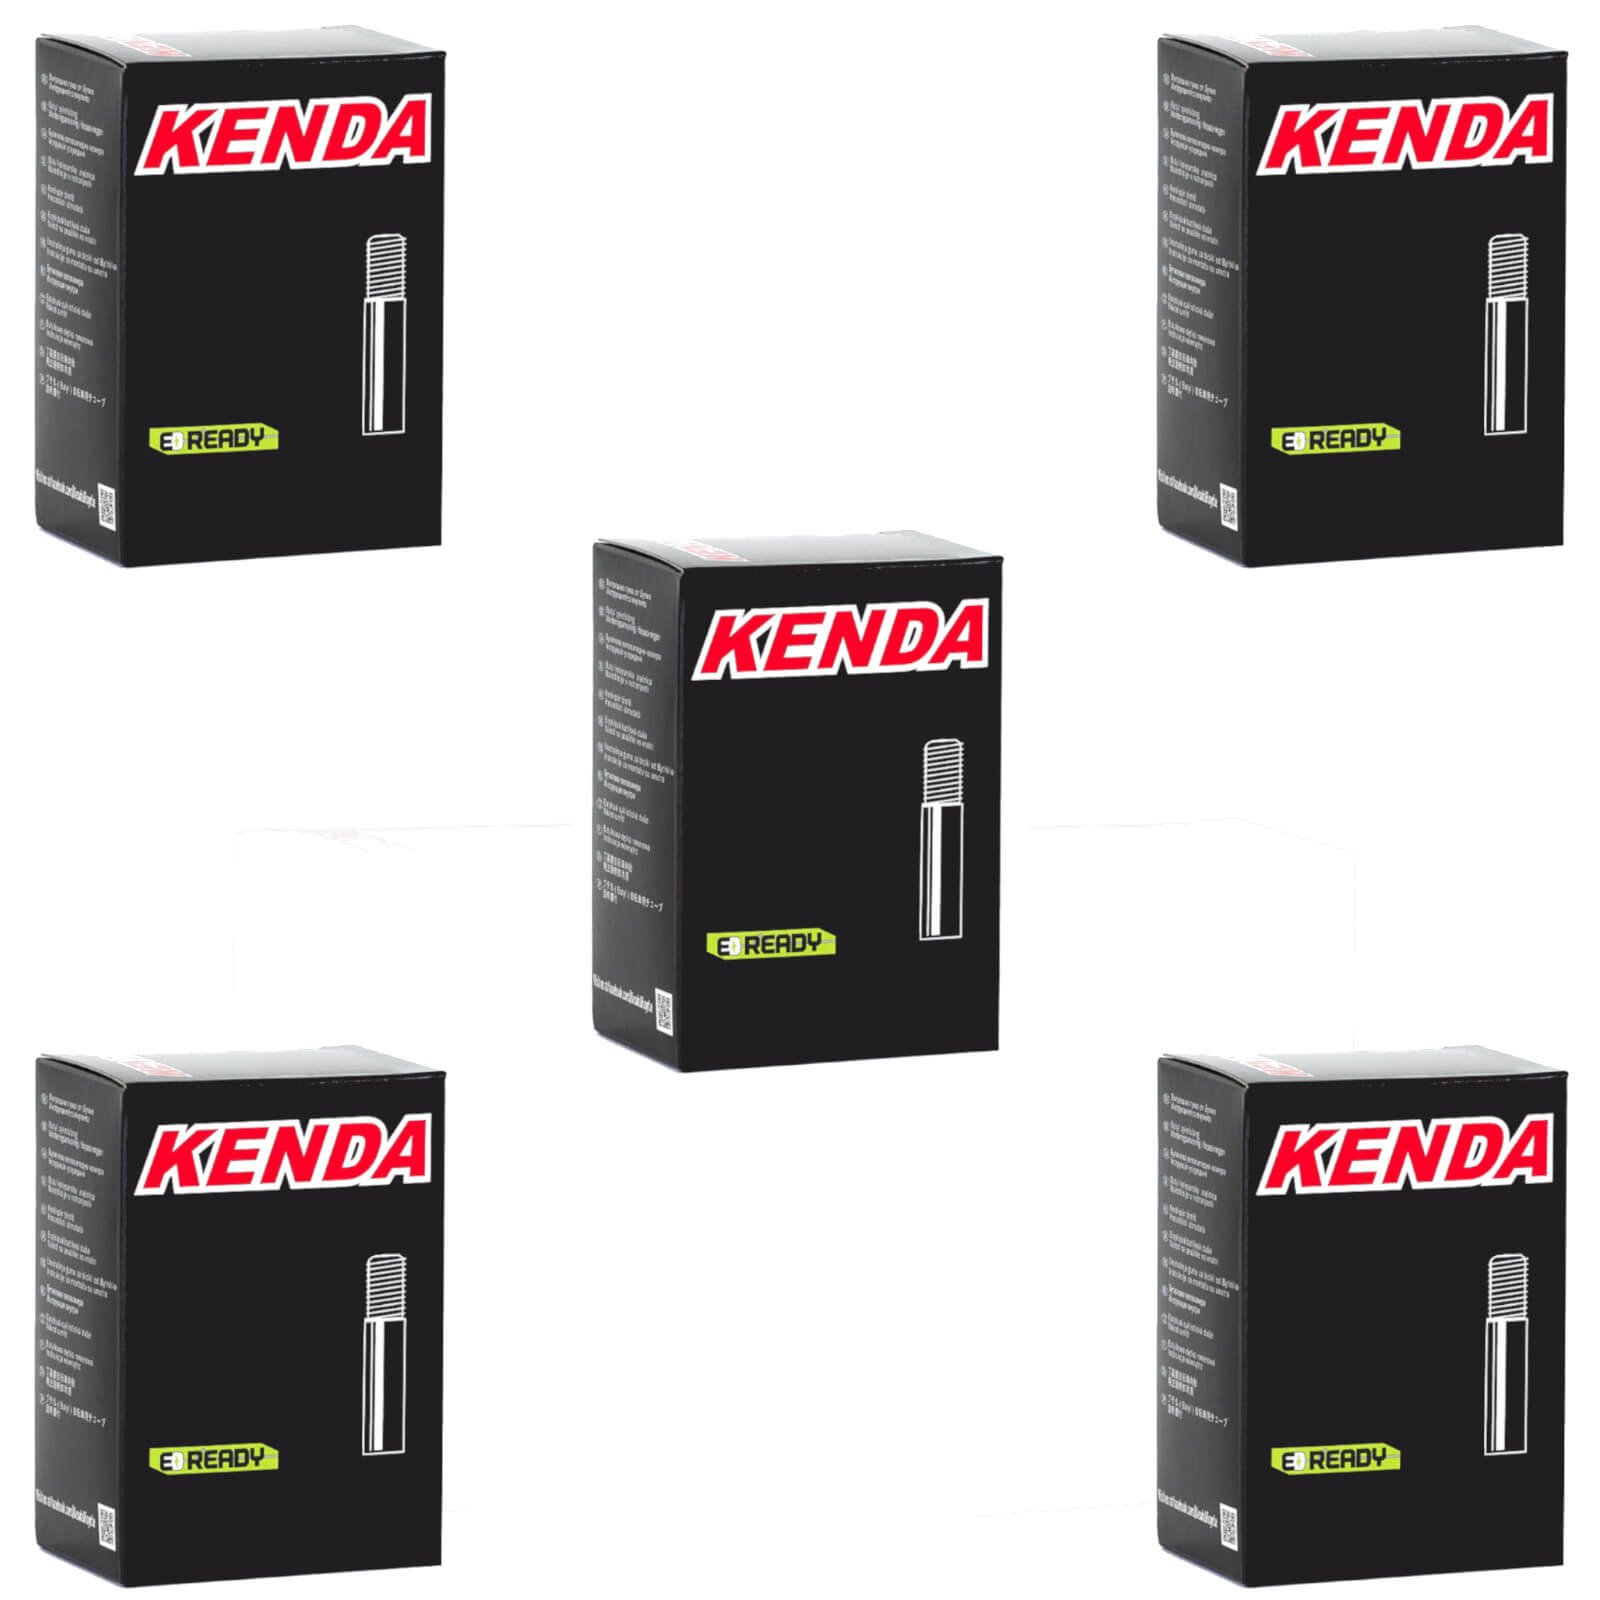 Kenda 700x30-43c 700c Schrader Valve Bike Inner Tube Pack of 5